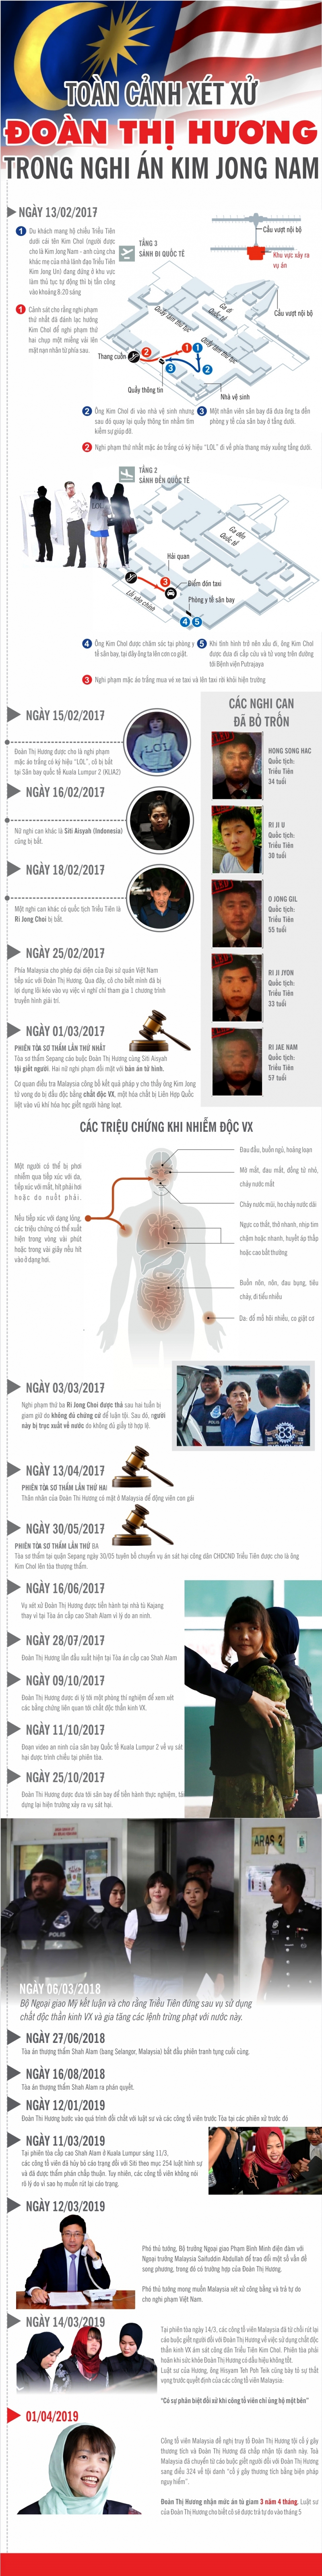 infographics toan canh vu xet xu doan thi huong trong nghi an kim jong nam